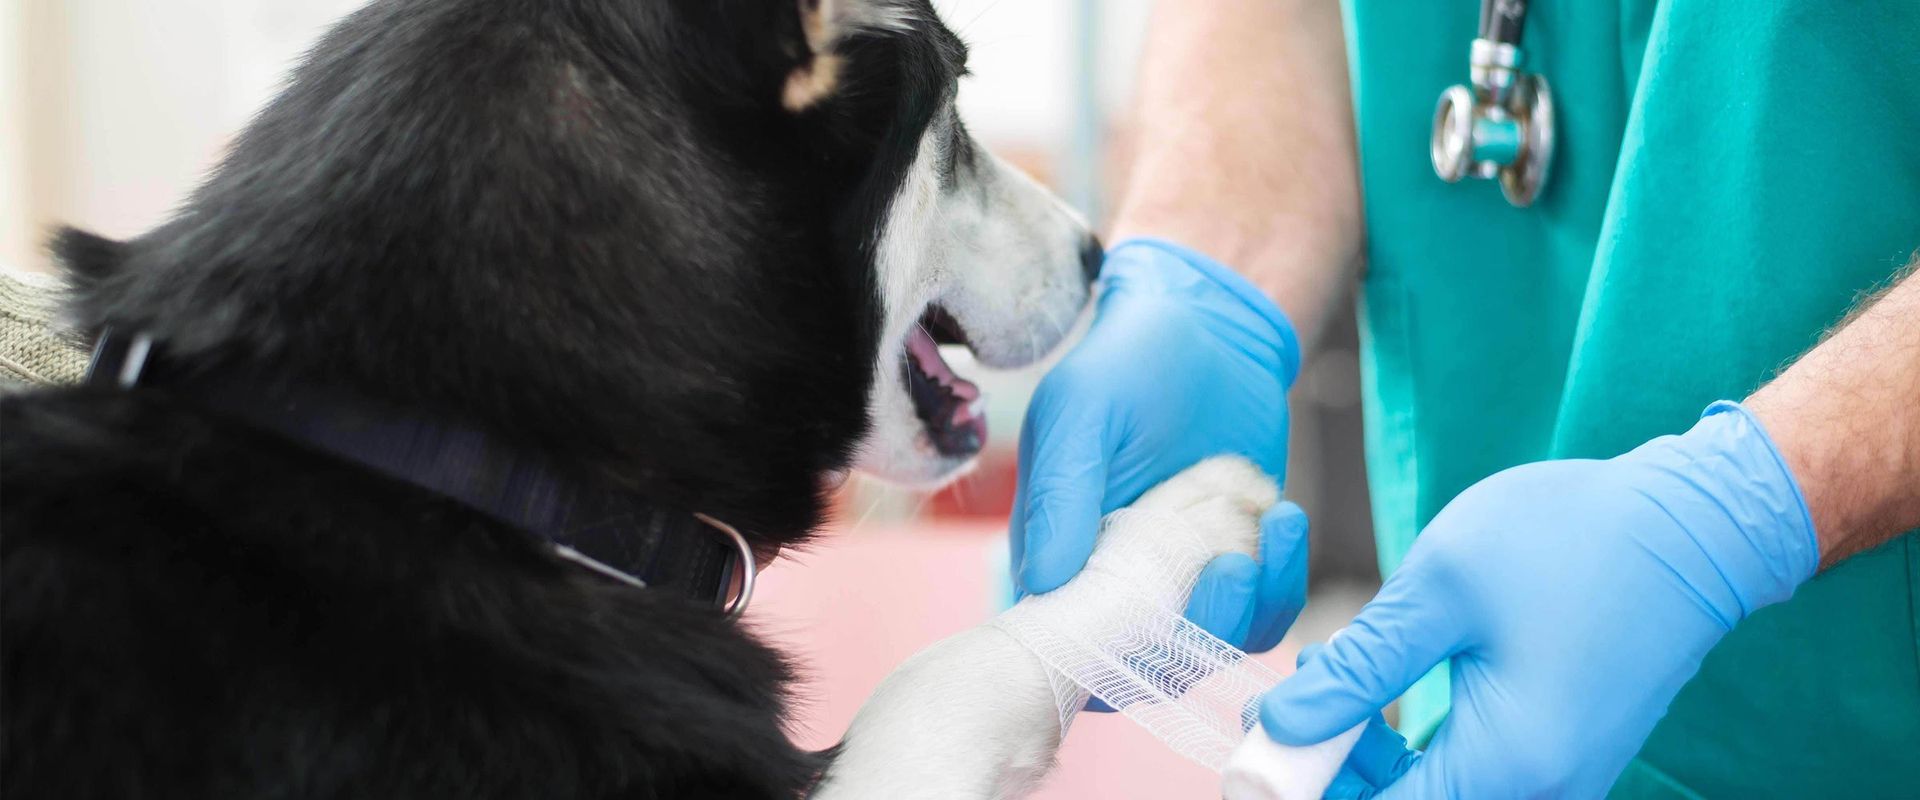 morphettville veterinary clinic dog getting leg treated